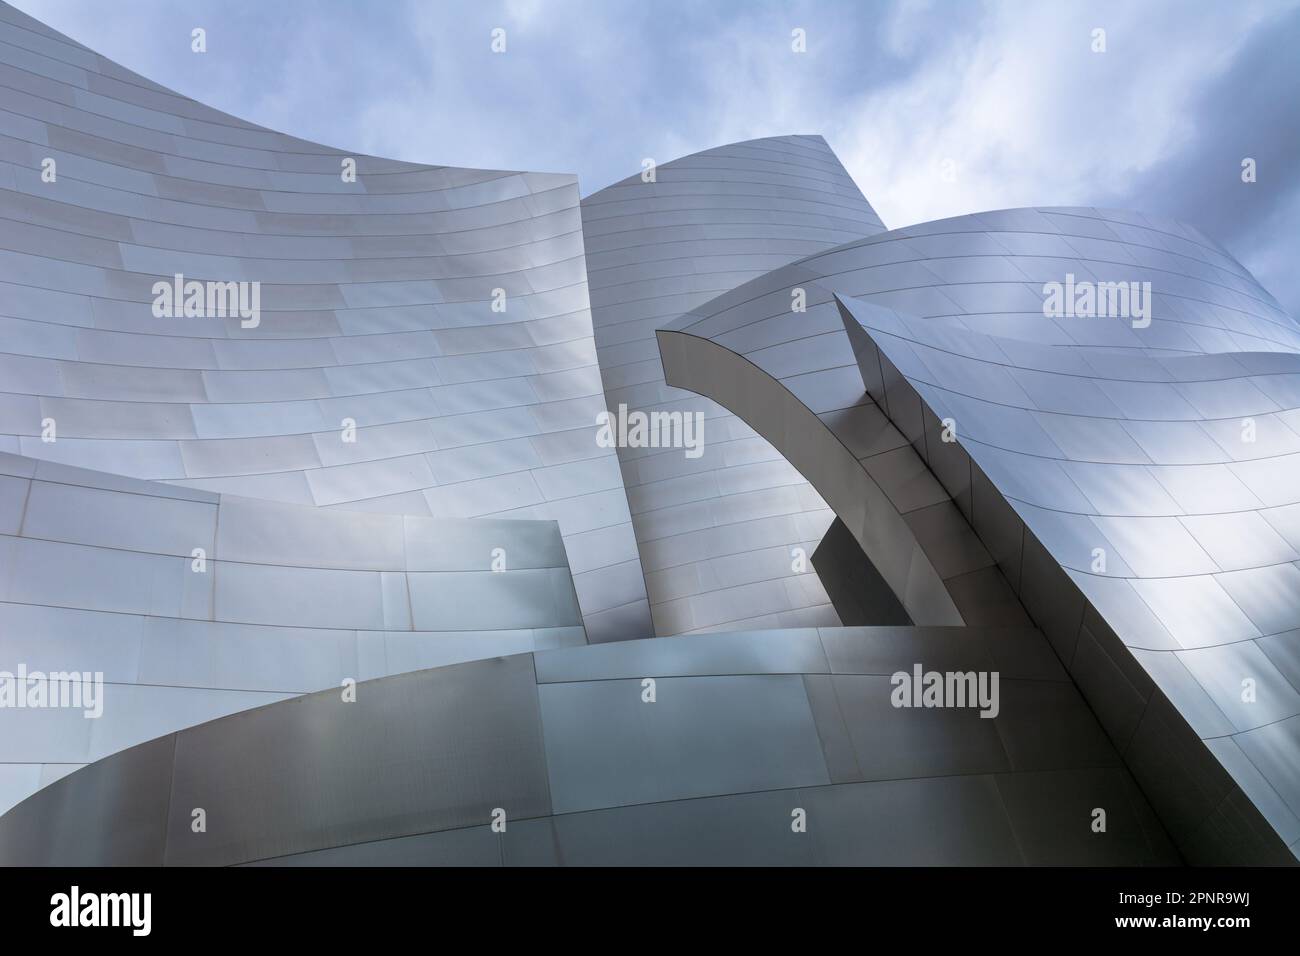 Die Walt Disney Concert Hall im Zentrum von Los Angeles, Kalifornien, wurde vom berühmten Architekten Frank Gehry entworfen und 2003 fertiggestellt. Stockfoto